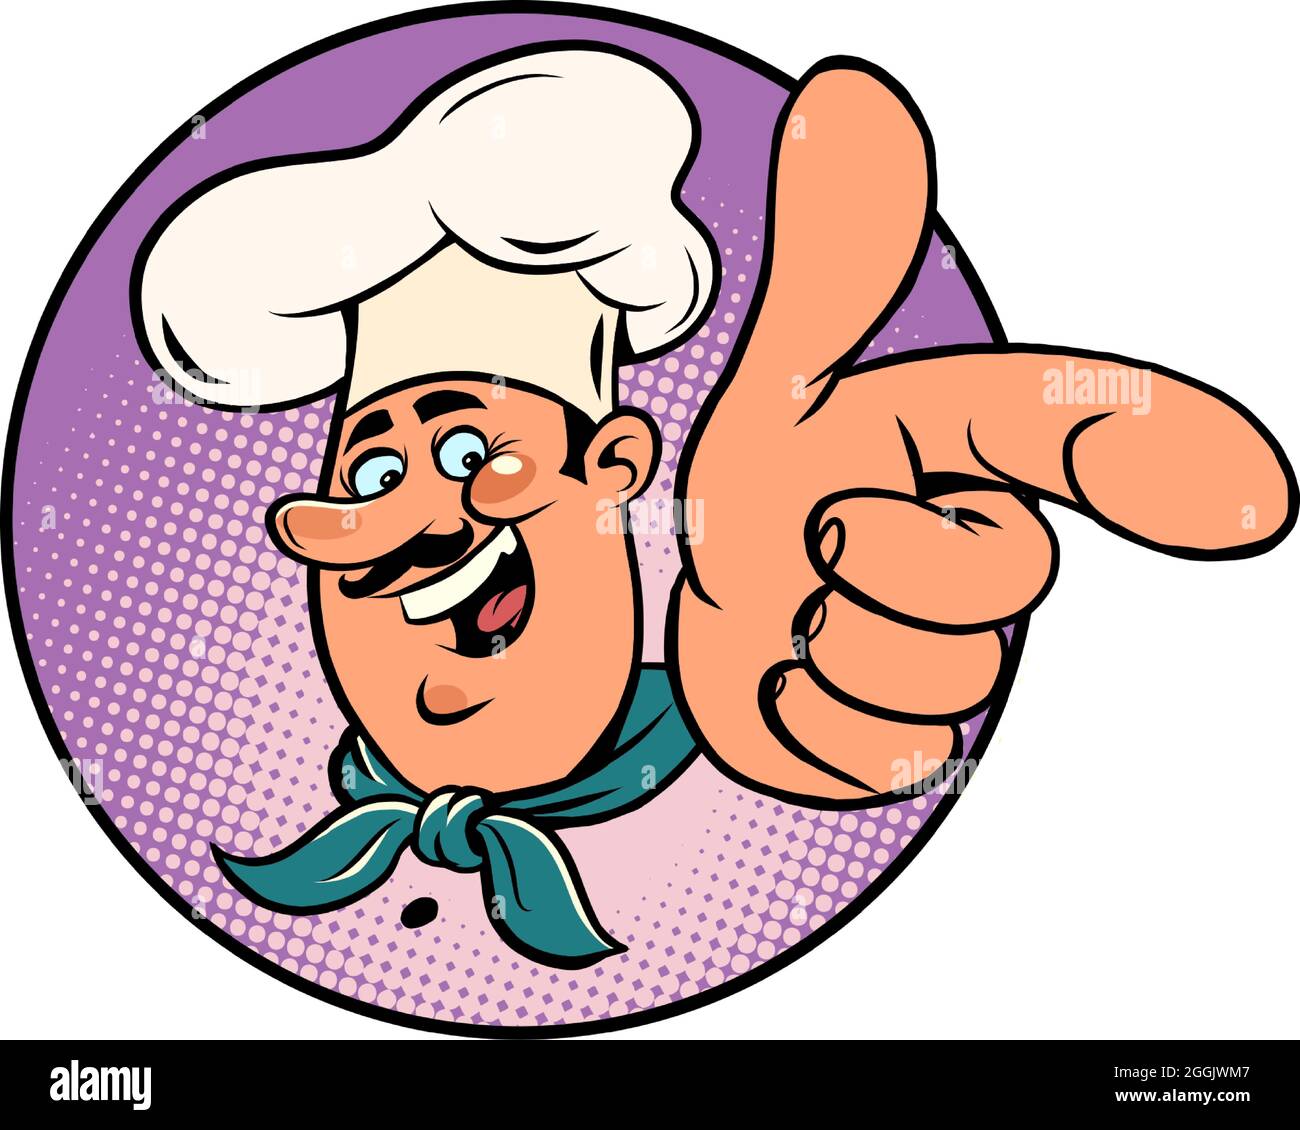 Mann Koch in einer weißen Kappe. Lächelndes Gesicht. Profi zeigt einen Finger Stock Vektor